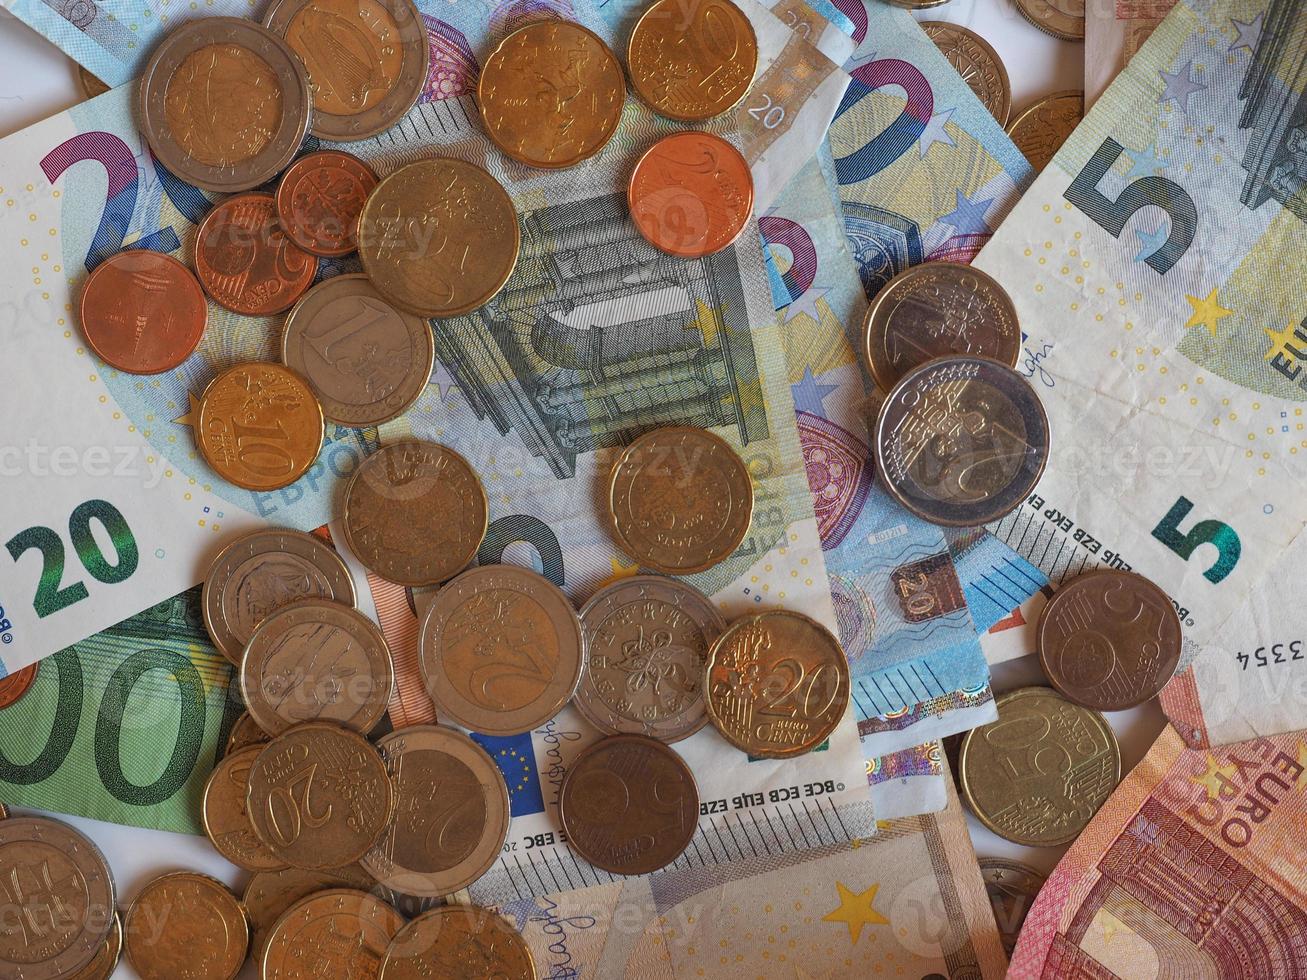 banconote e monete in euro euro, unione europea eu foto